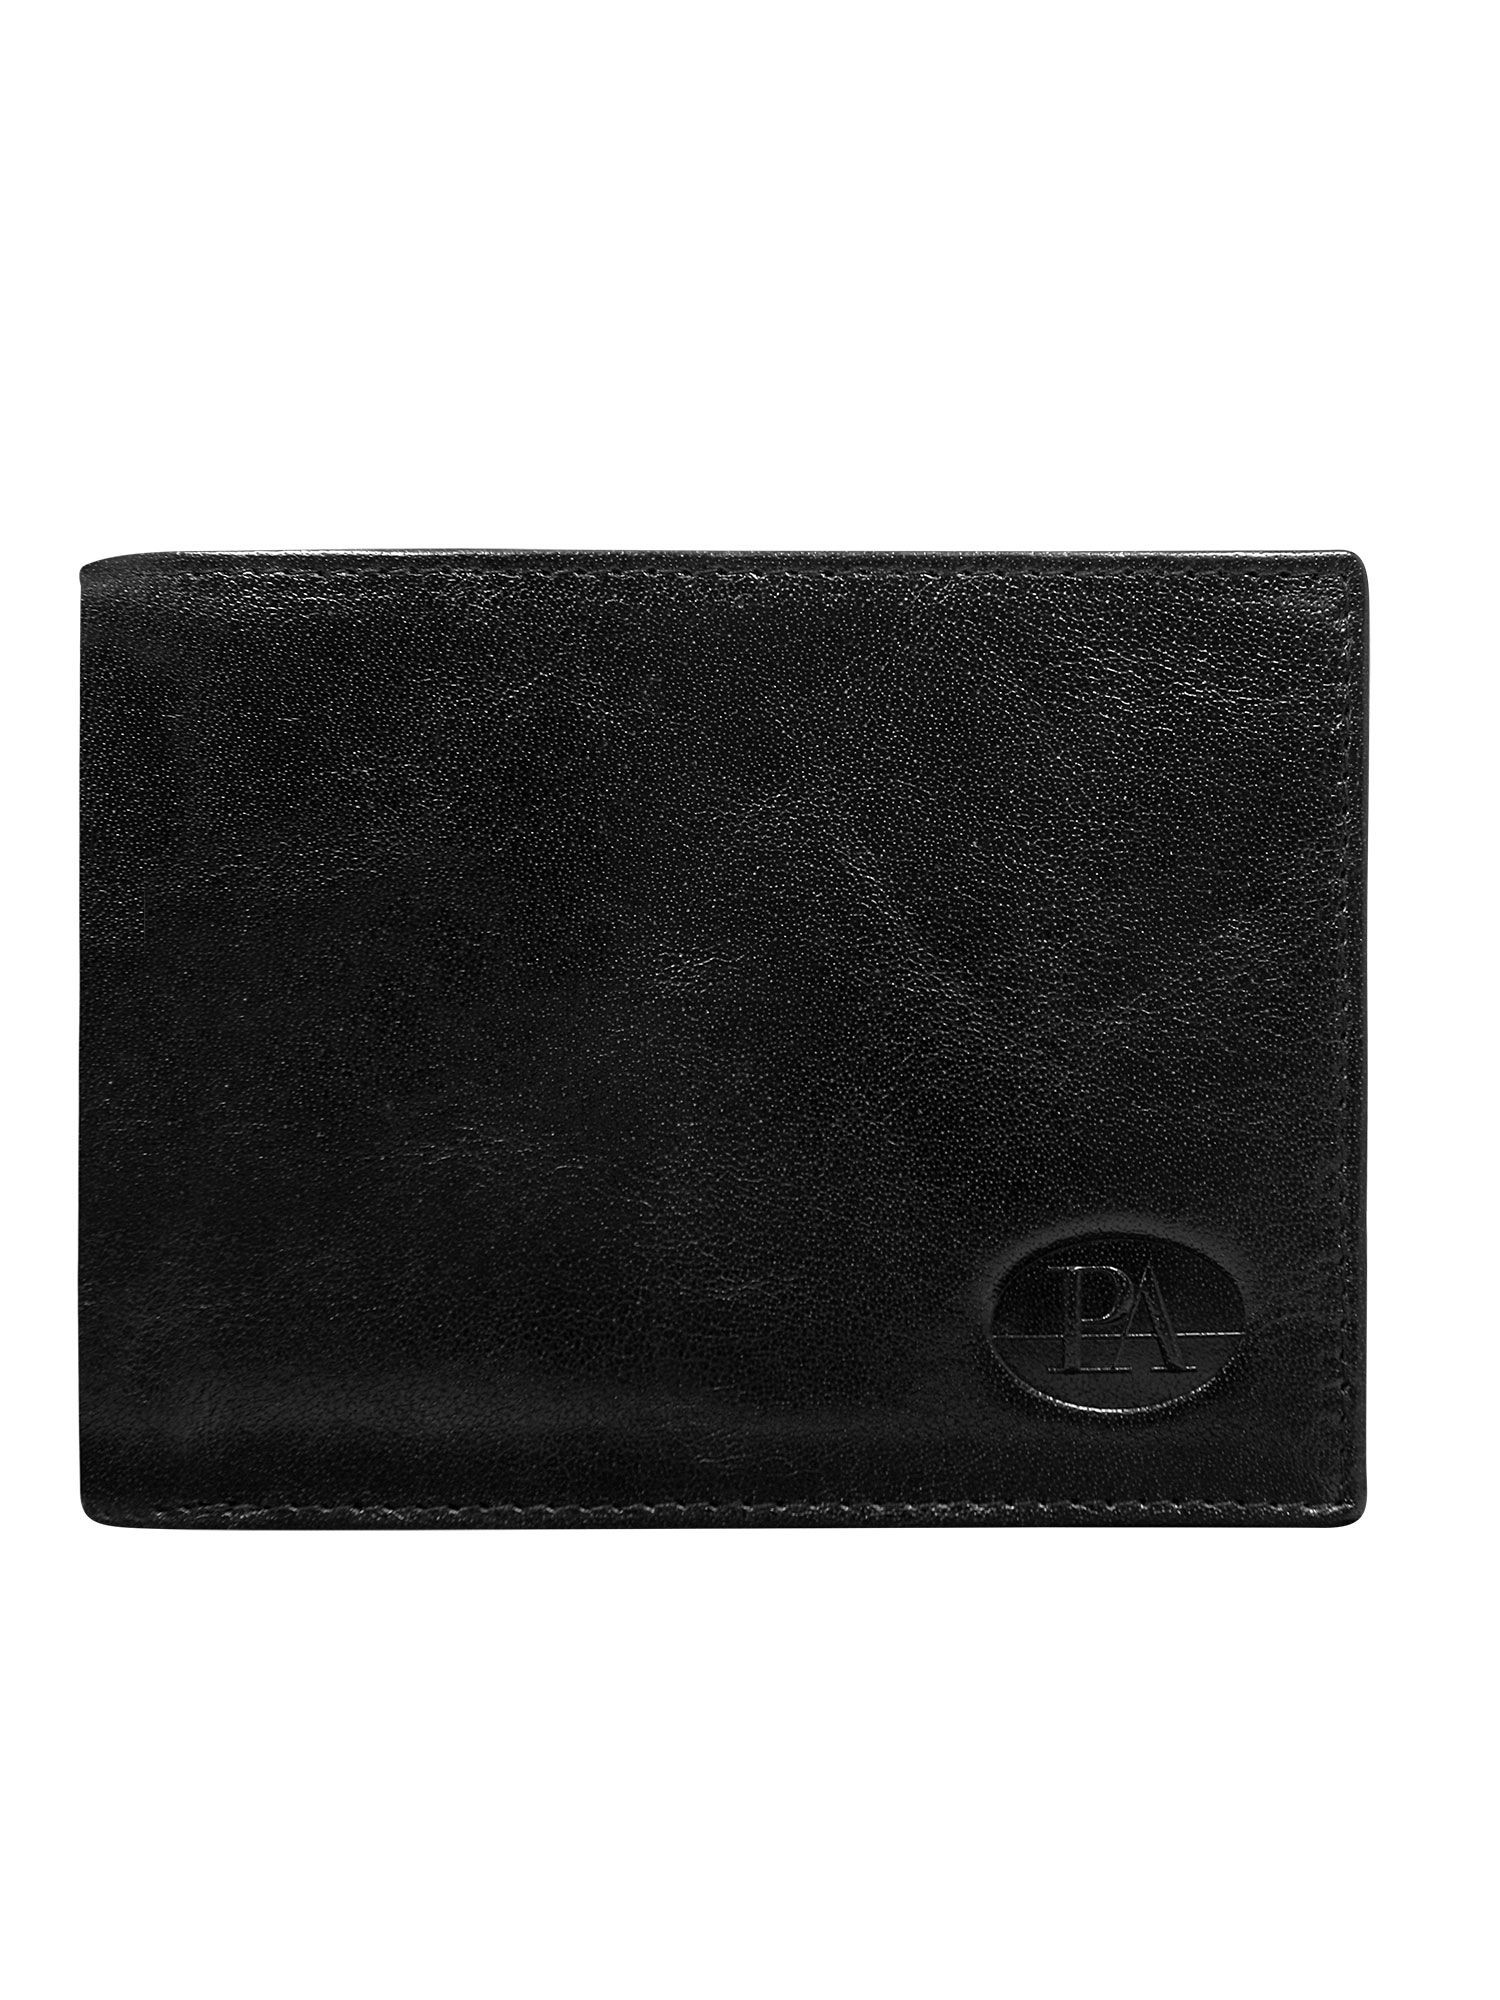 Peněženka CE PR PW 008 model 14834396 černá jedna velikost - FPrice